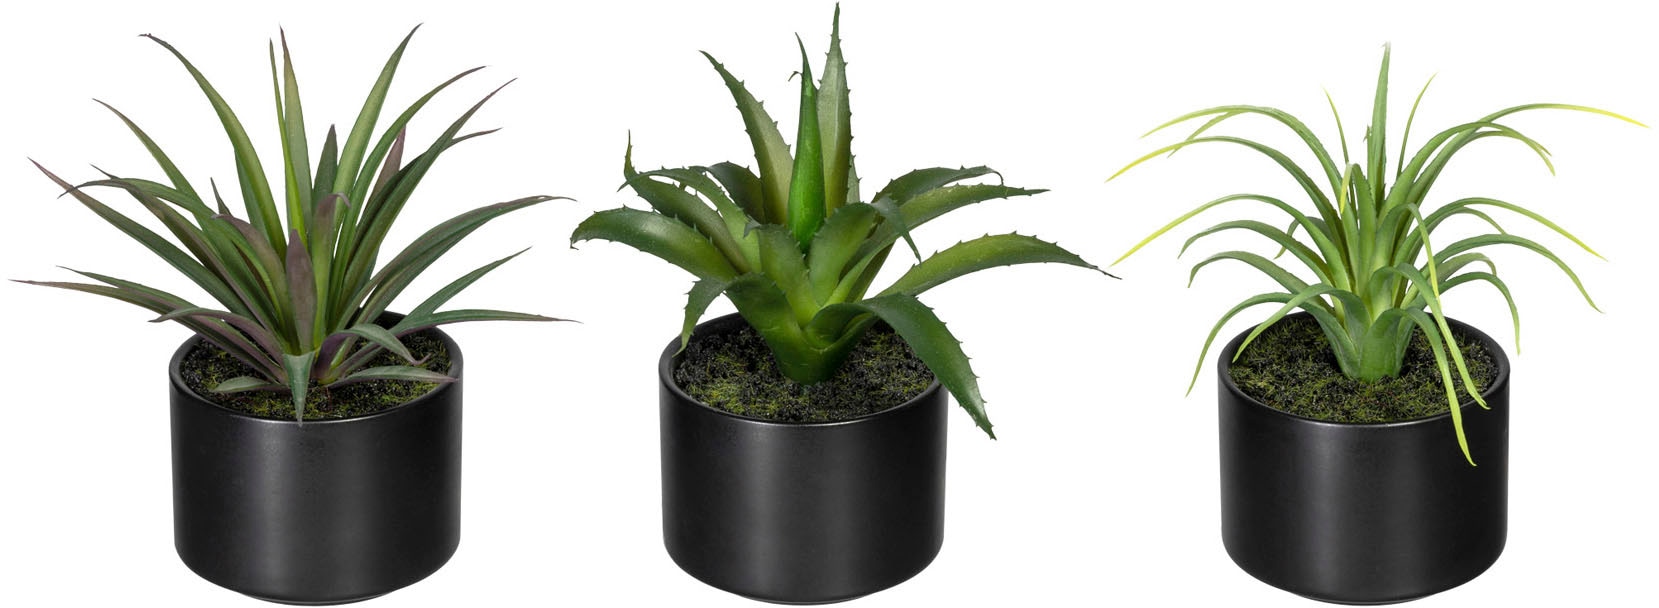 Künstliche Zimmerpflanze »Set aus Aloe, Agave und Tillandsie«, im Keramiktopf, 3er Set